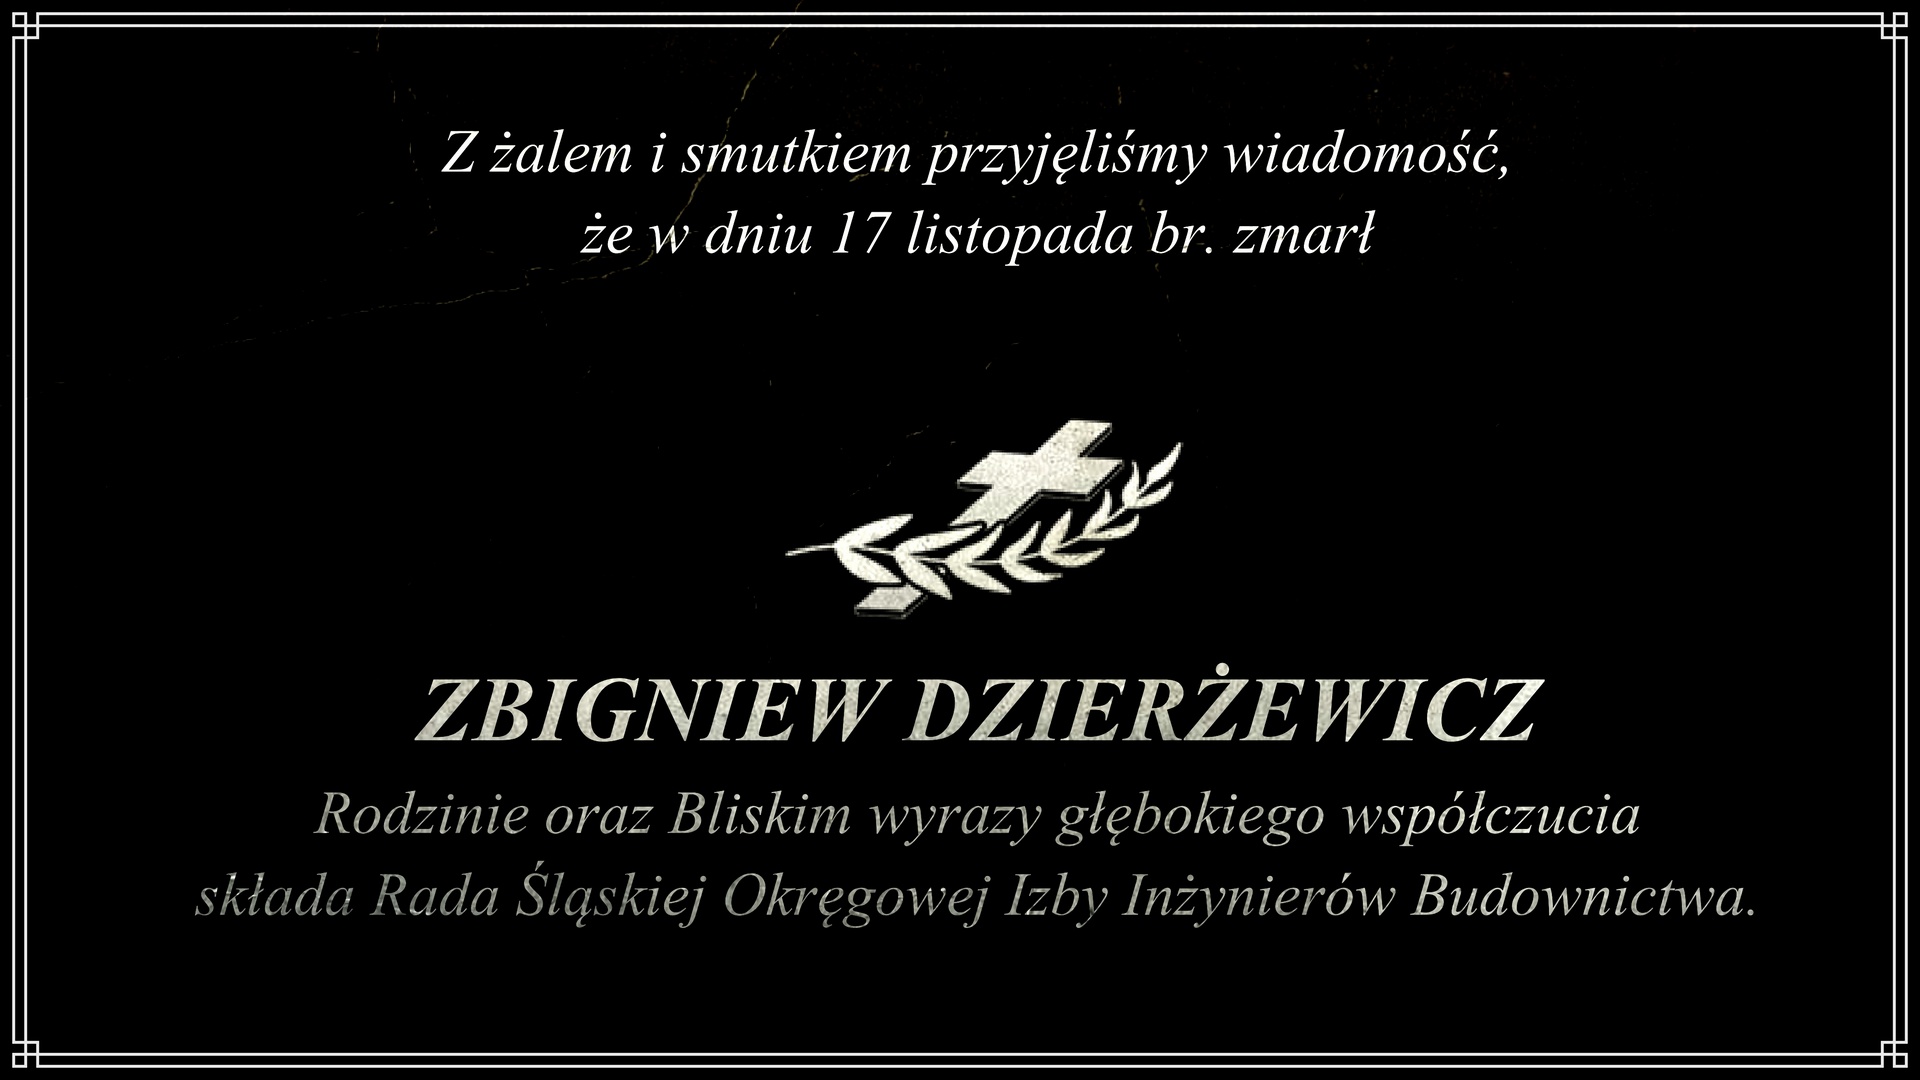 Śp. Zbigniew Dzierżewicz